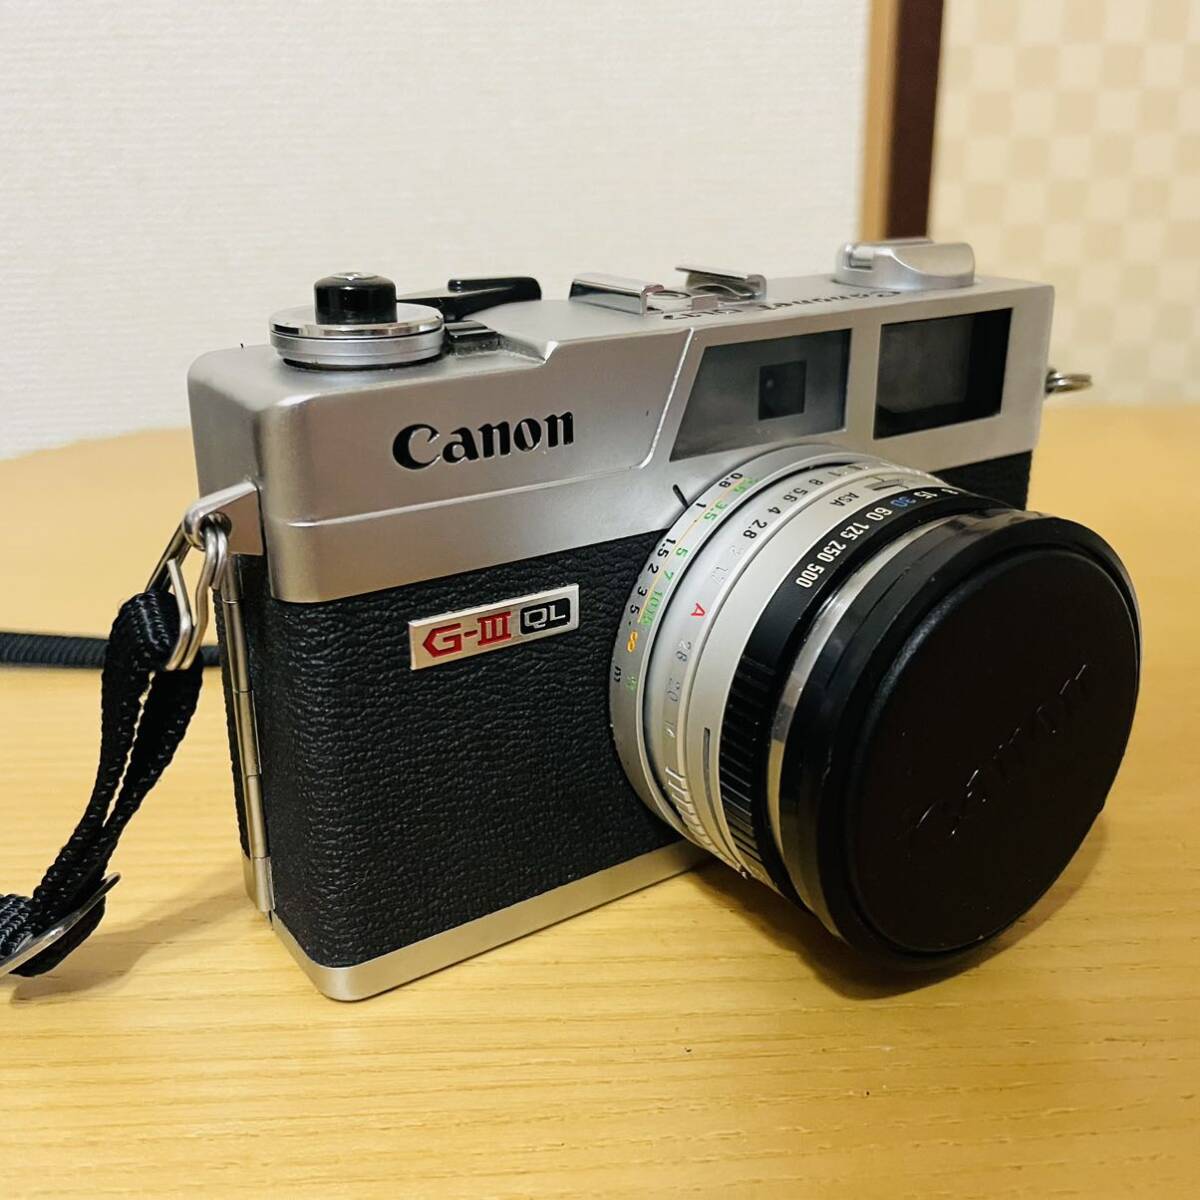 CANON キヤノン Canonet QL17 GIII ブラック レンジファインダー フィルムカメラ